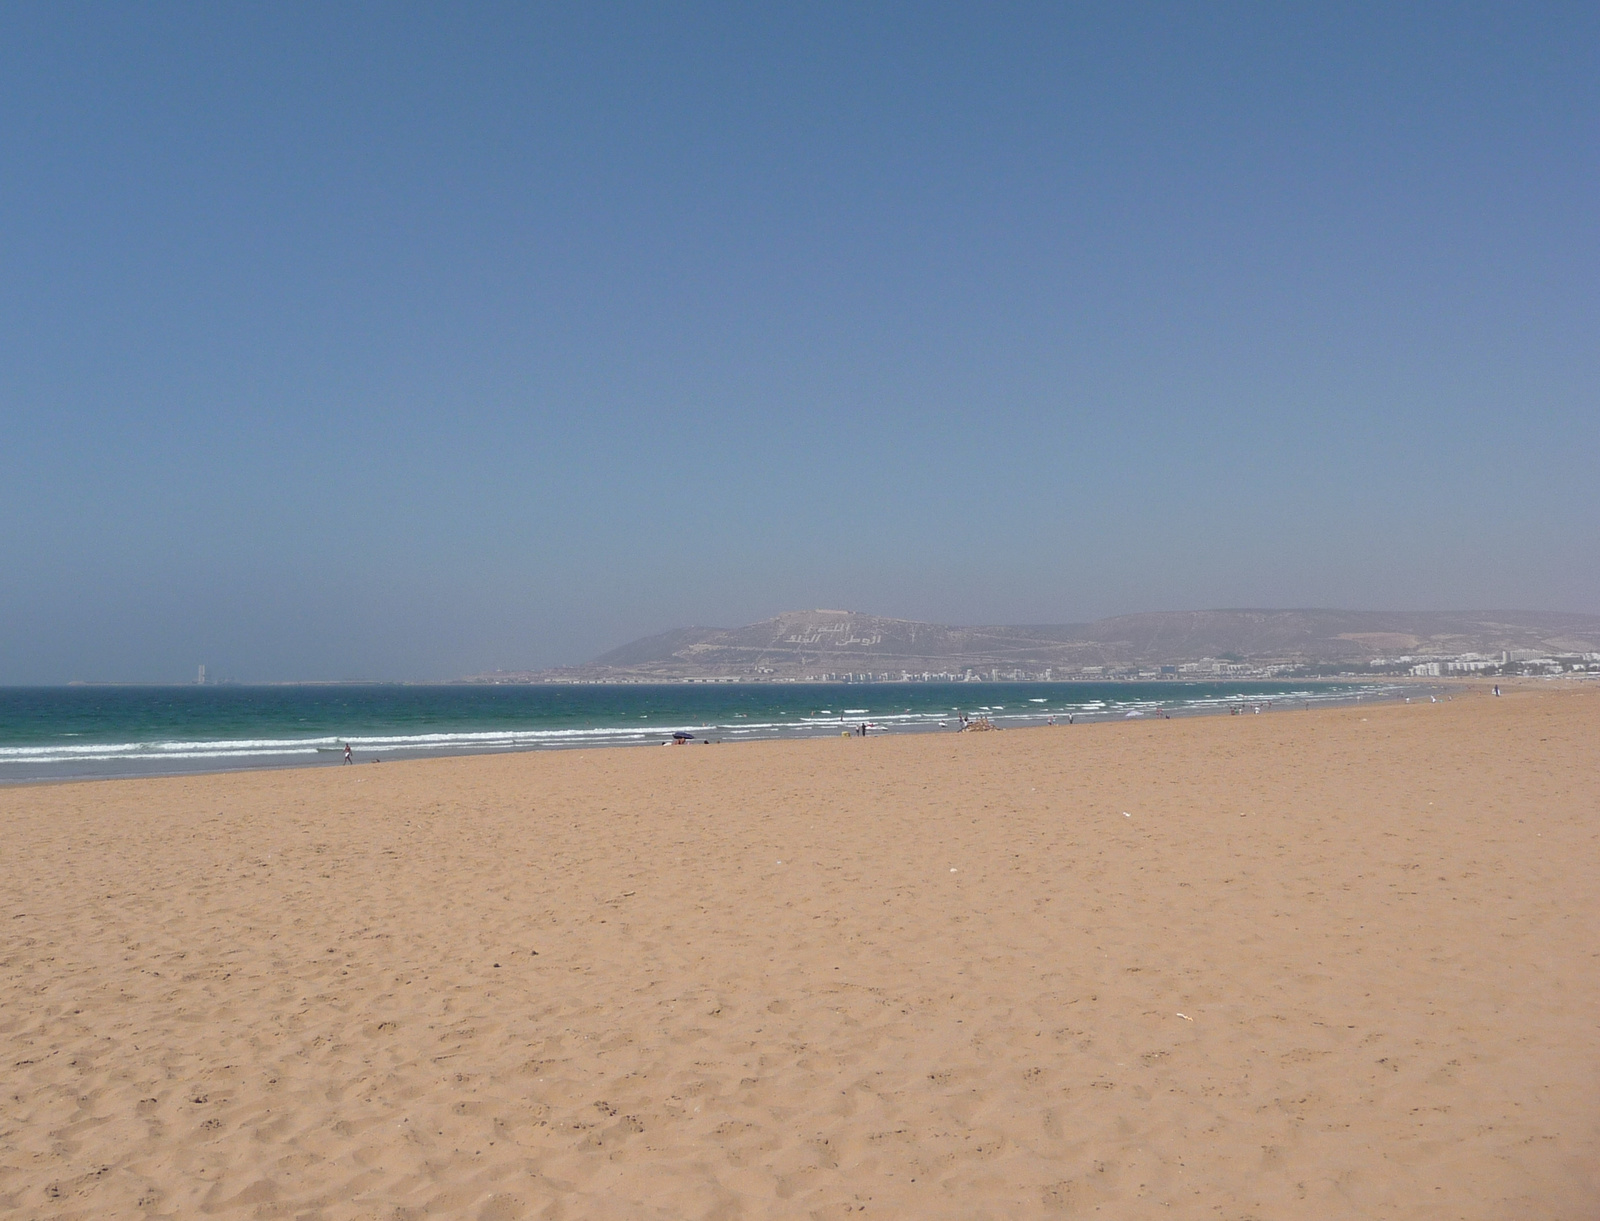 Agadir - Part 2